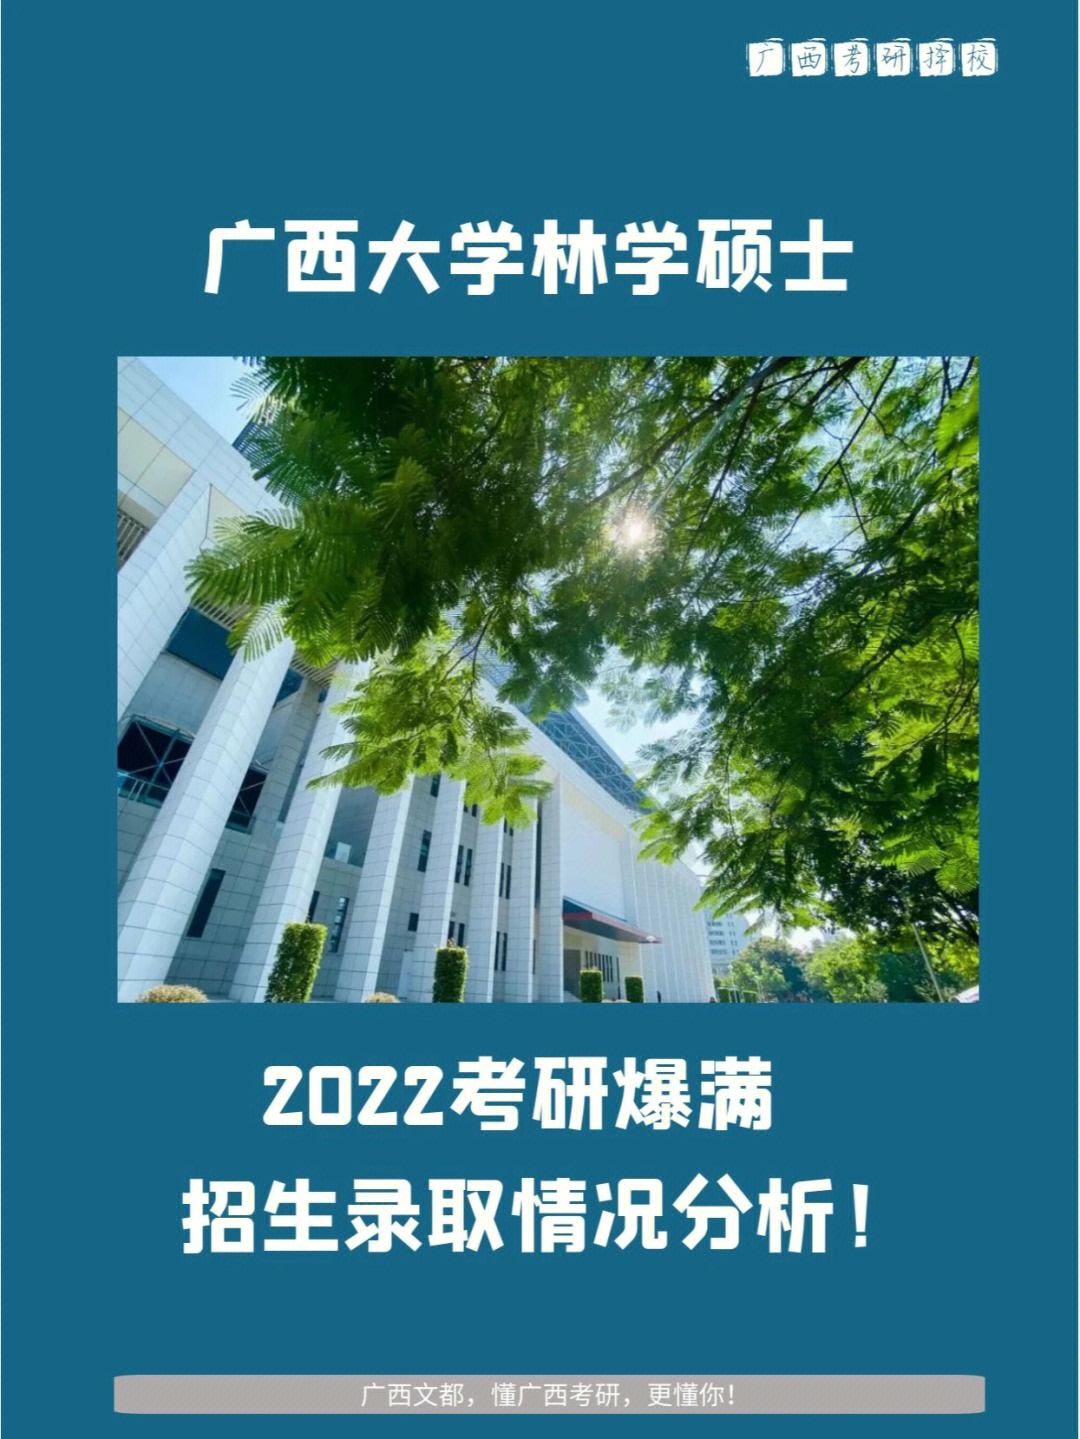 广西大学林学硕士2022考研招生录取情况